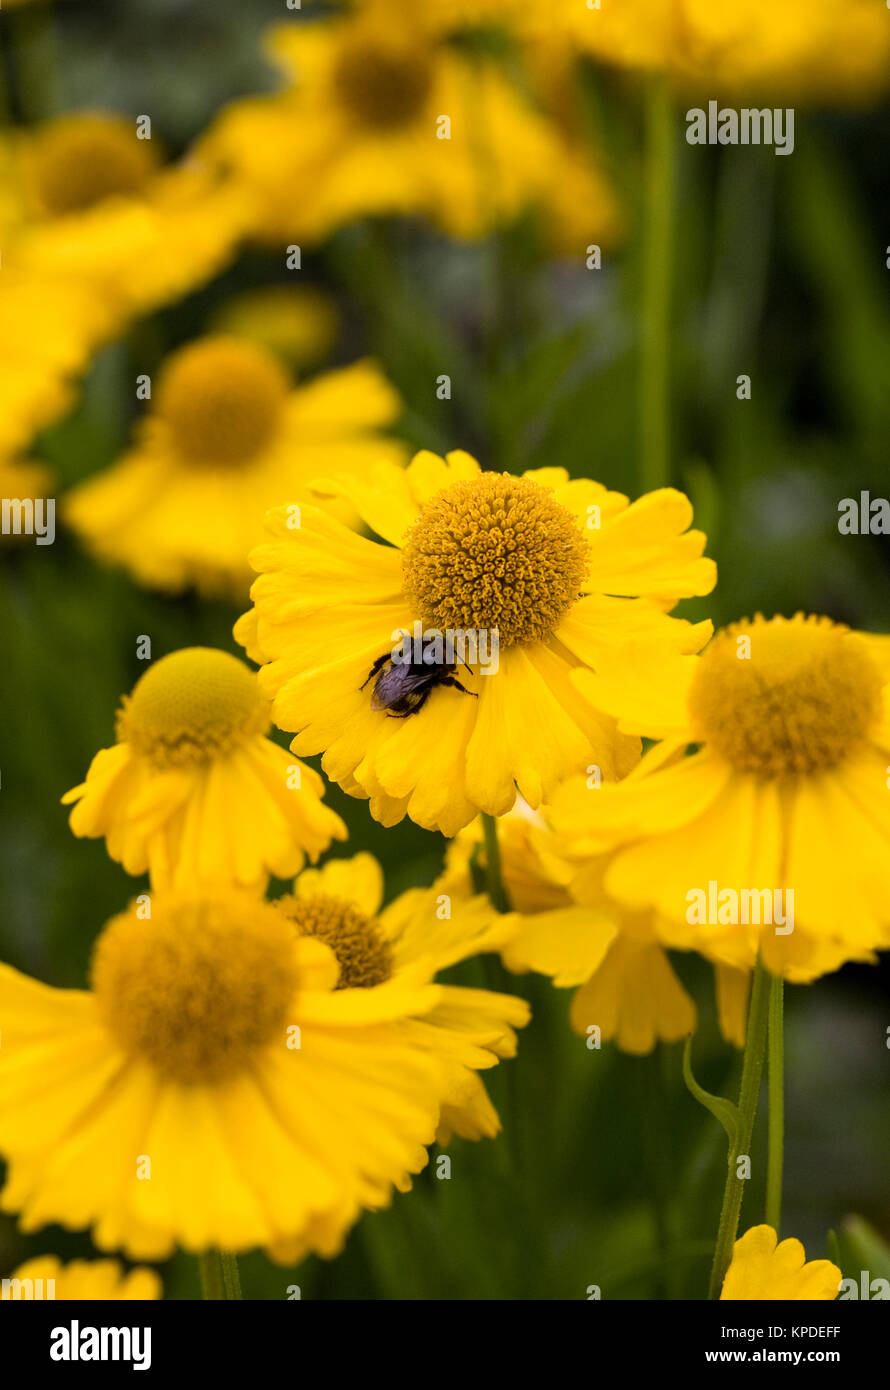 Helenium 'Pumilum Magnificum' flowers. Stock Photo